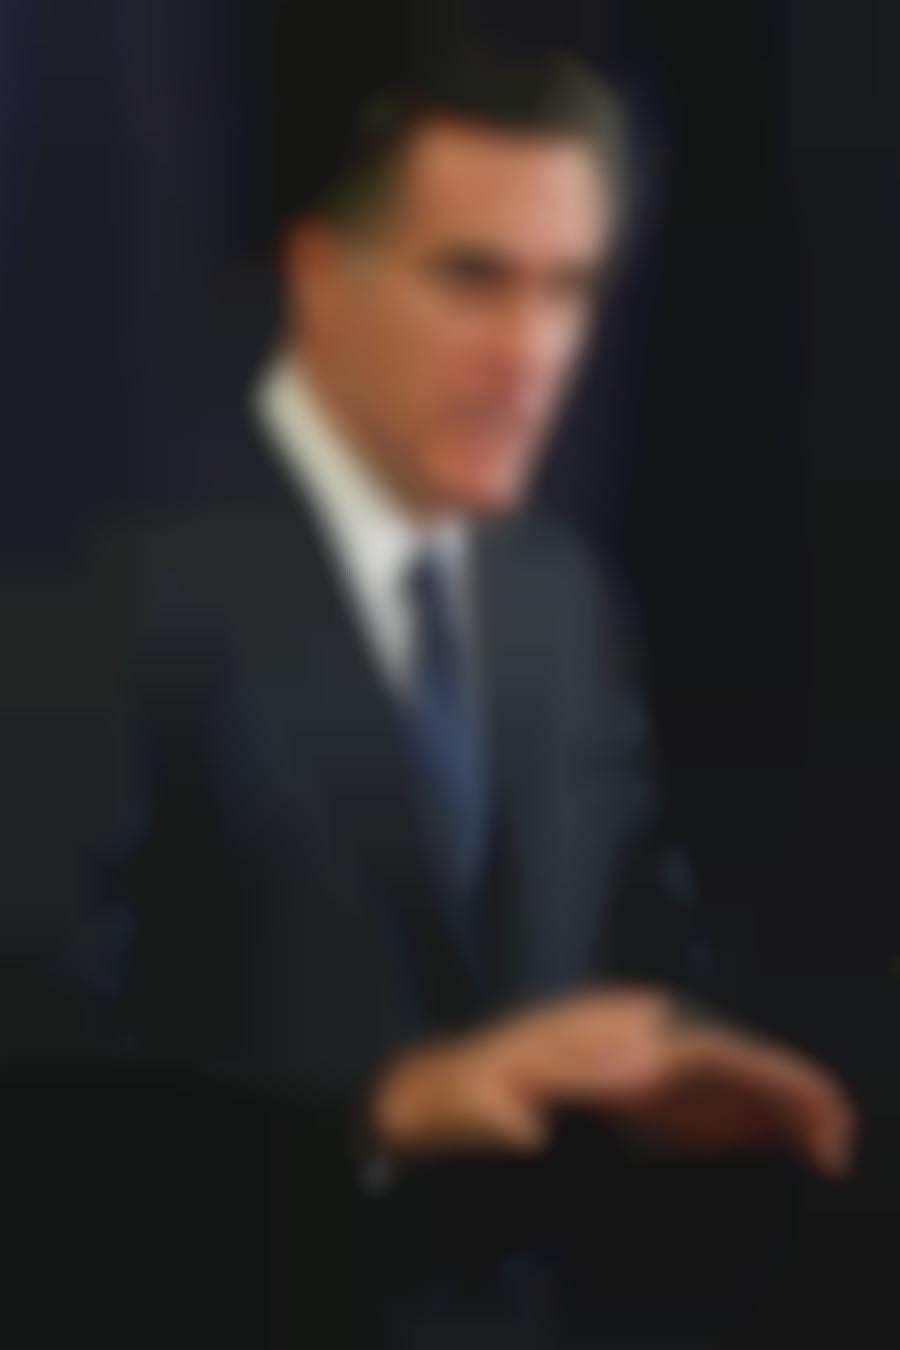 USA: Mitt Romney pokazał zeznanie podatkowe